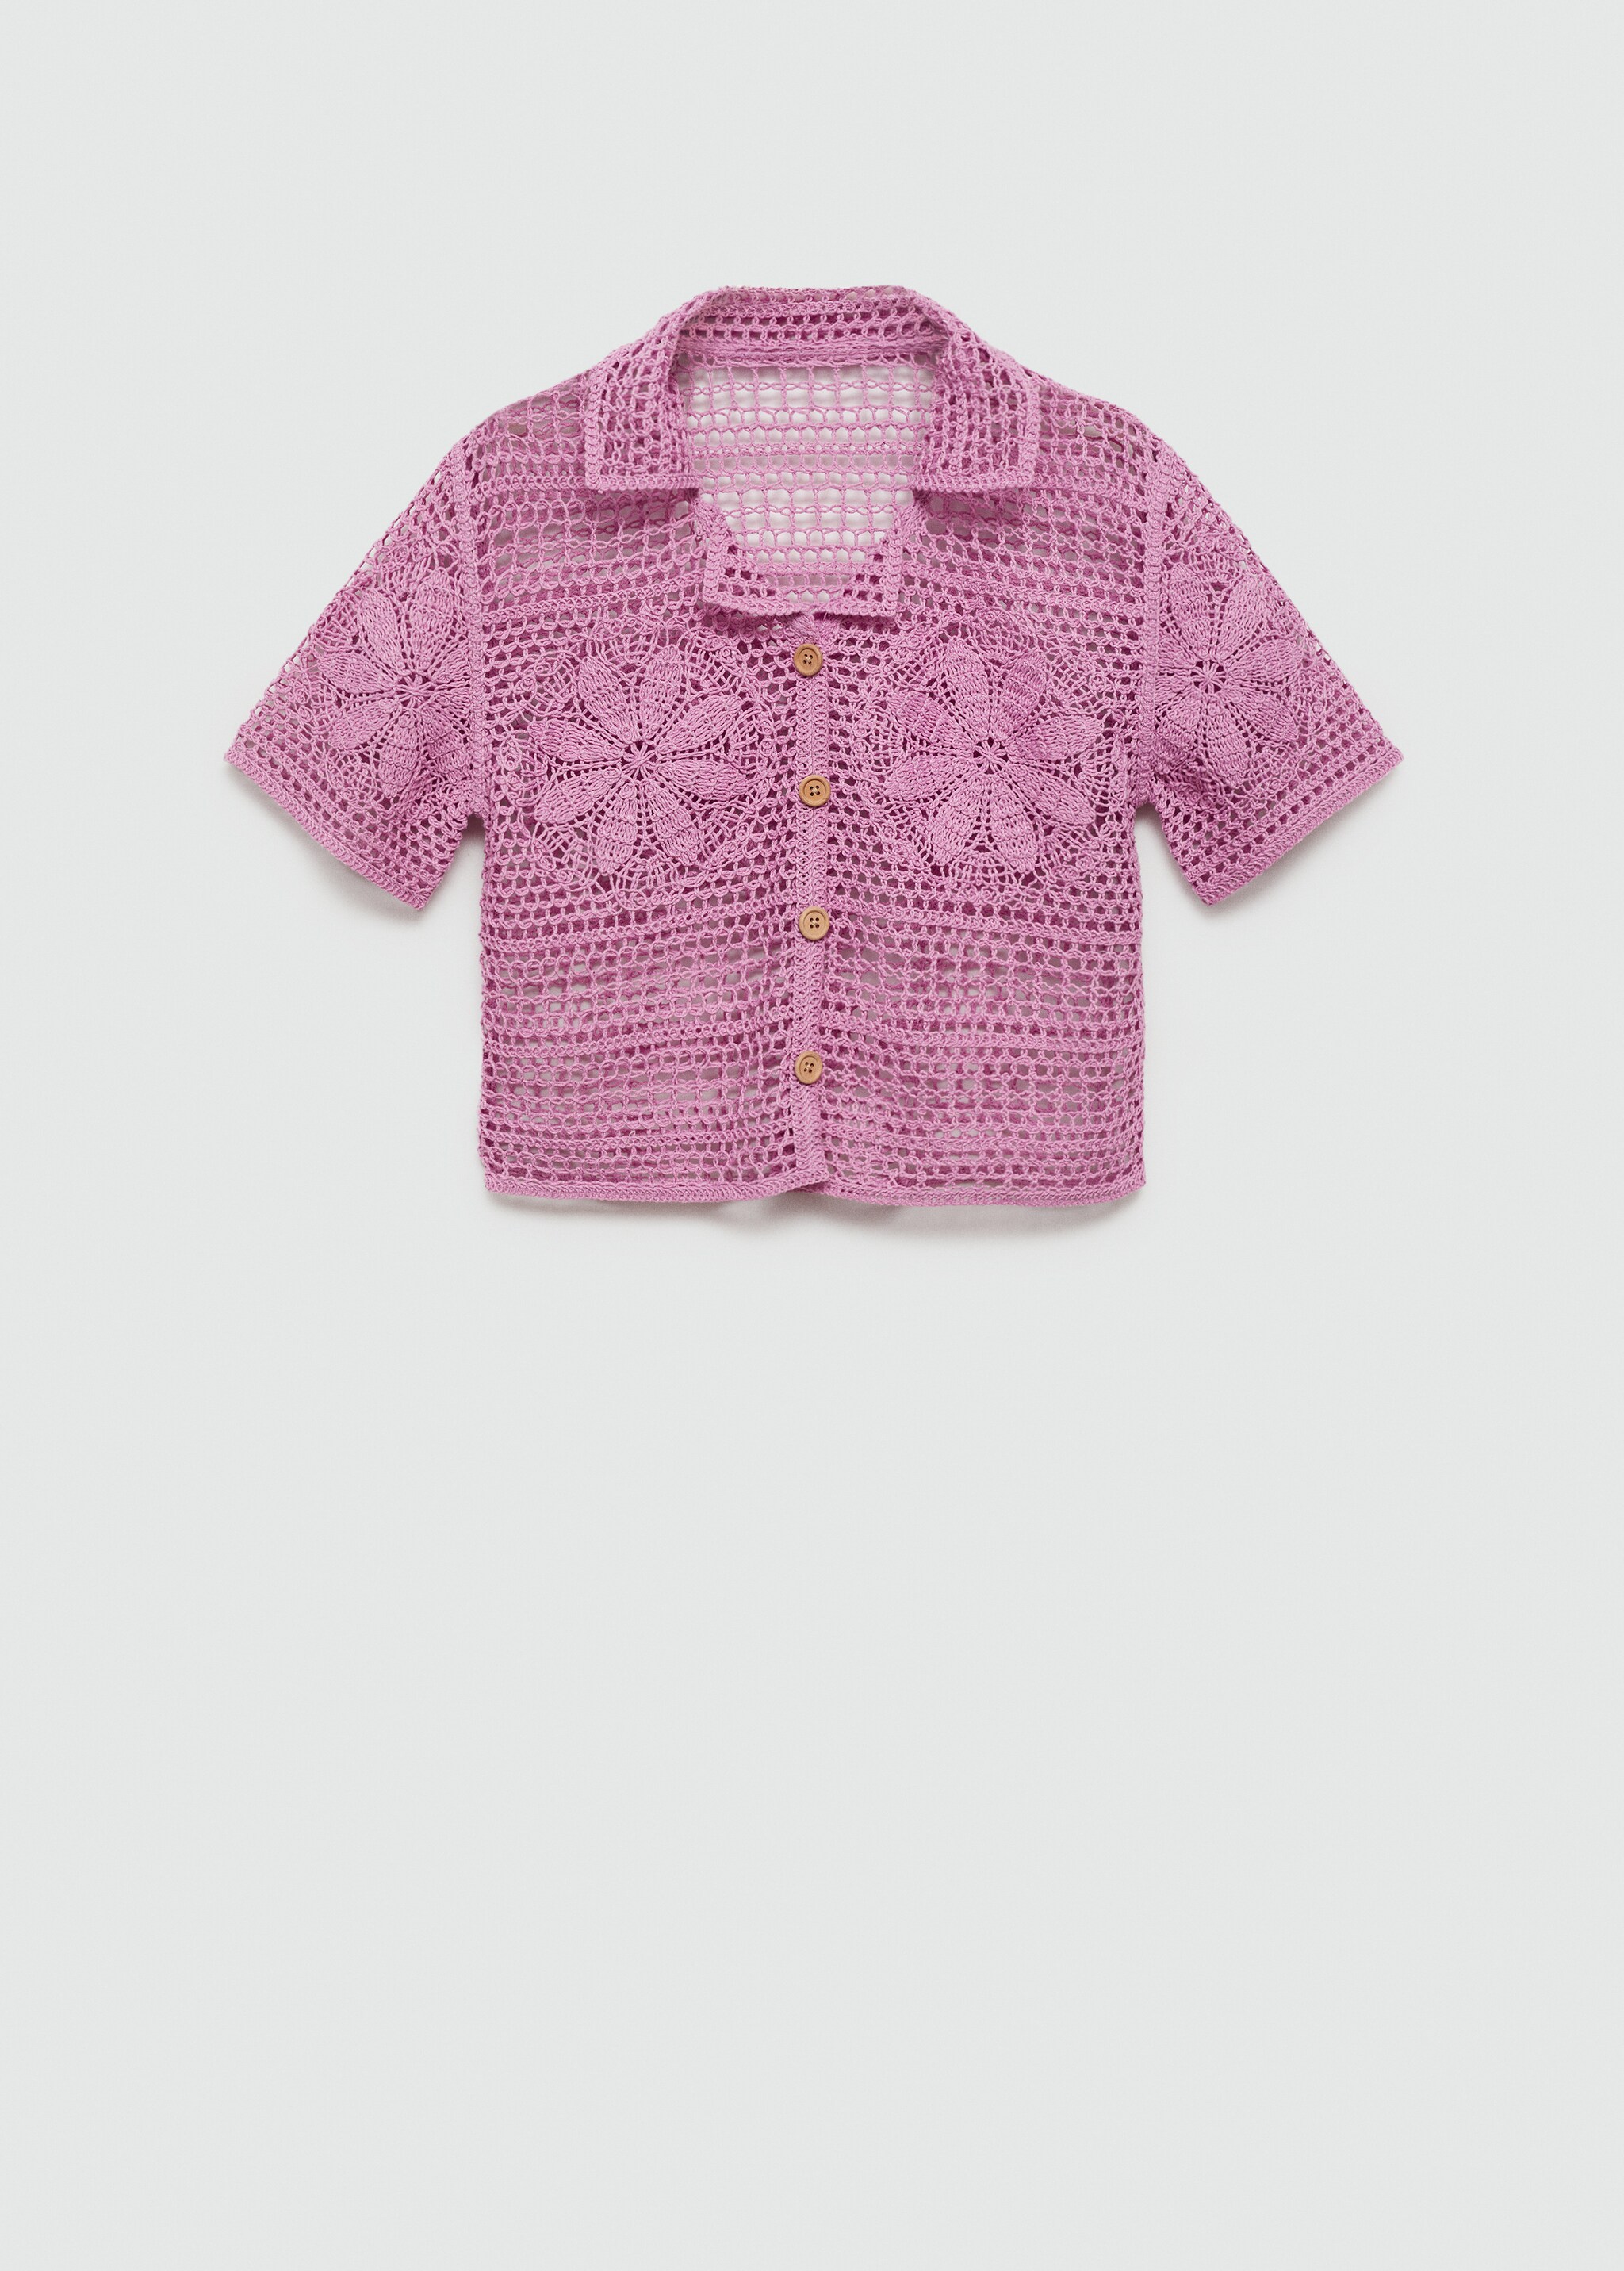 Camicia crochet fiori - Articolo senza modello